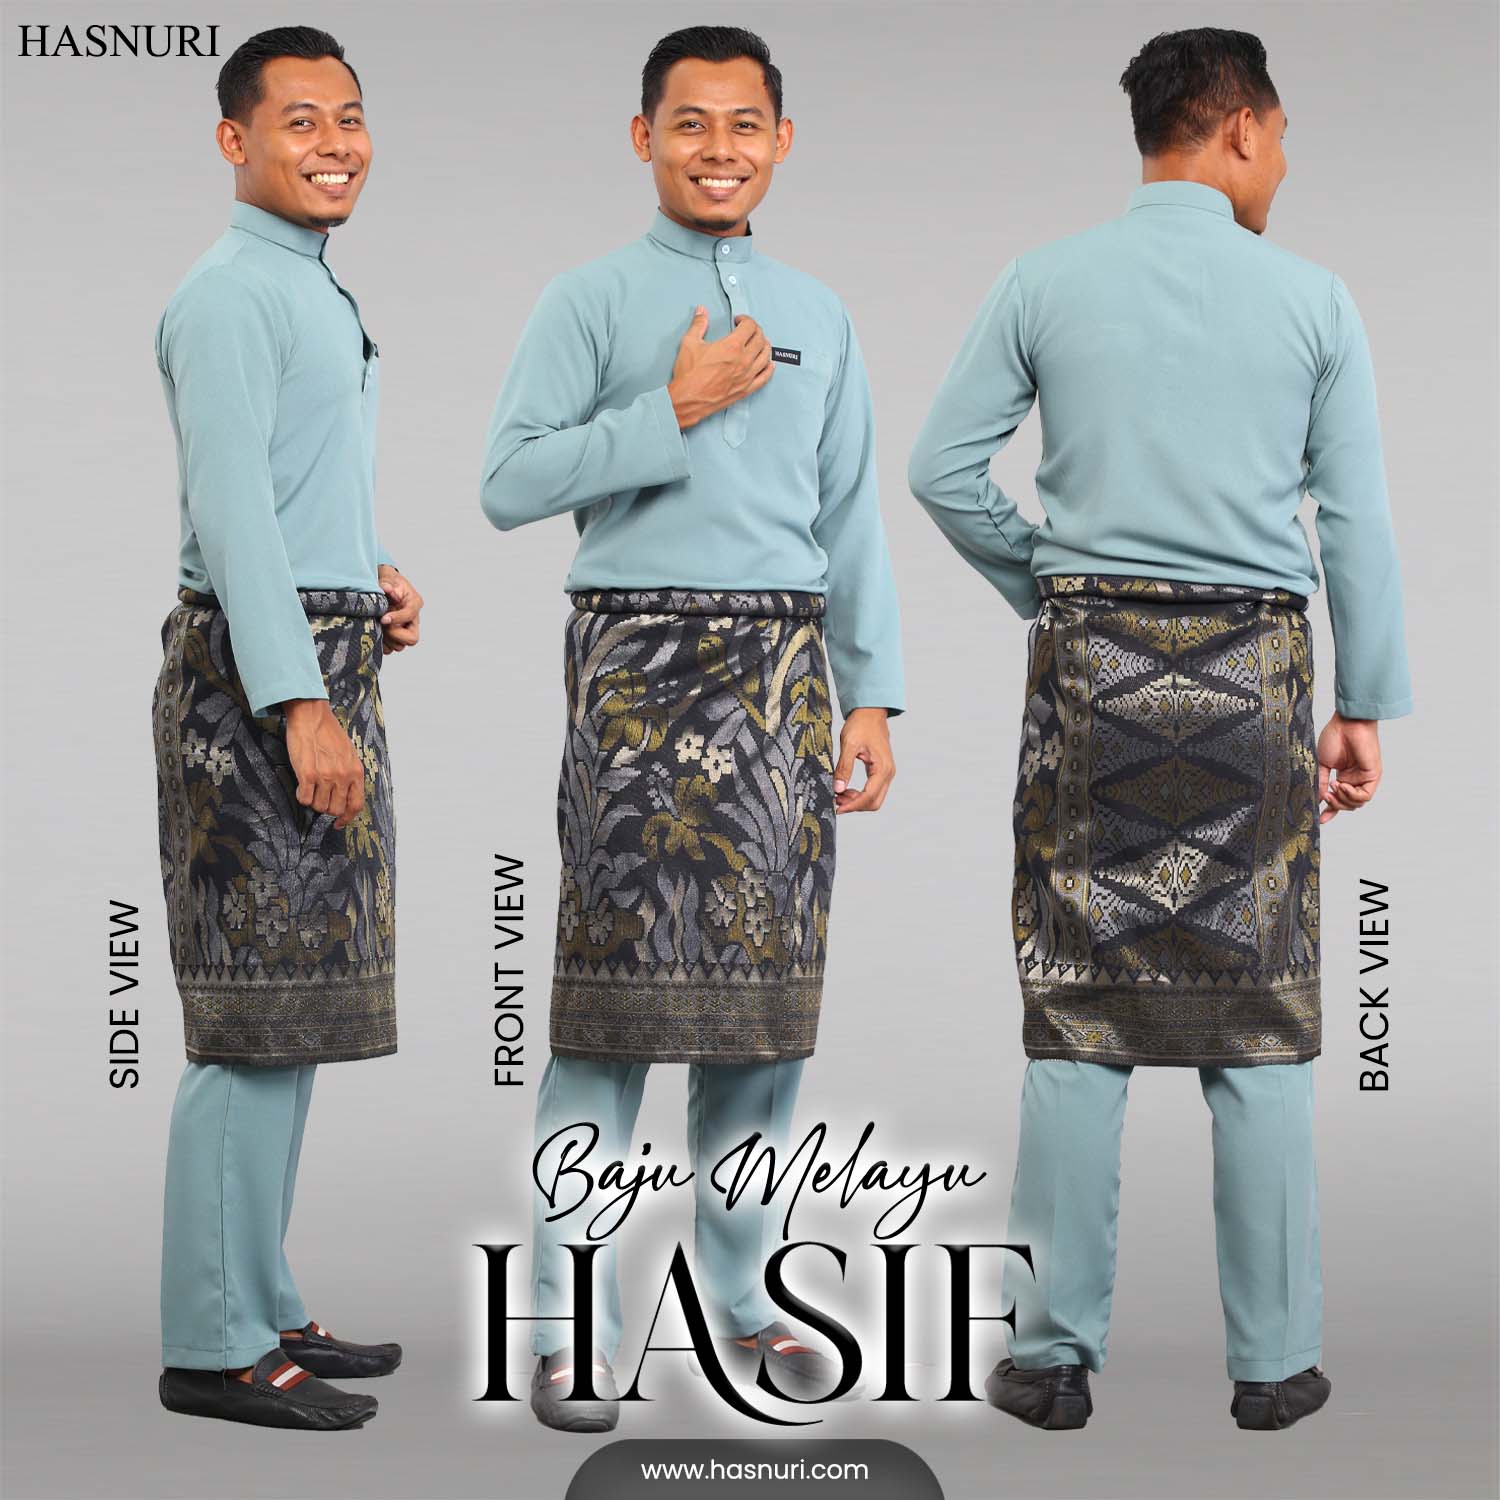 Baju Melayu Hasif Kids - Deep Maroon